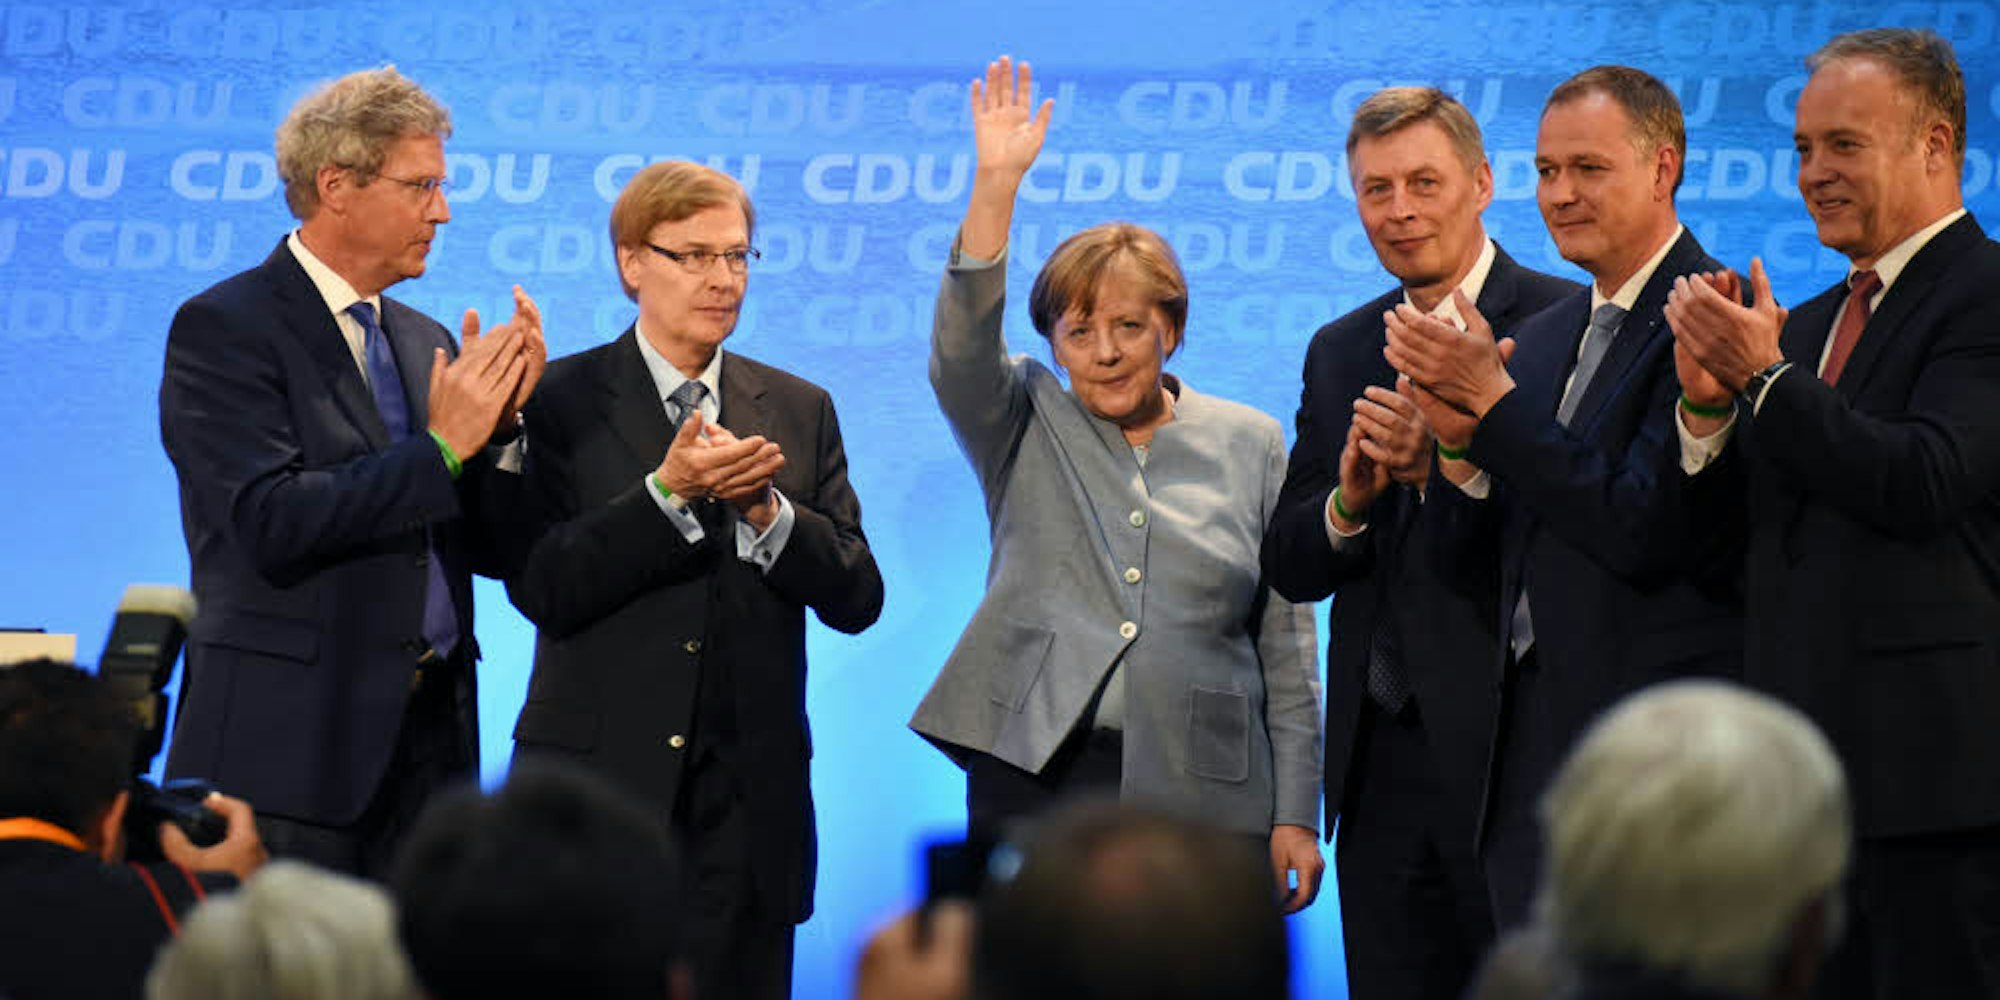 Vor dem Abschied: Im Mai 2017 besuchte Angela Merkel die oberbergische CDU im Wahlkampf in Waldbröl und erntete Applaus – hier von (v.l.) Klaus-Peter Flosbach, Peter Biesenbach, Bodo Löttgen, Dr. Carsten Brodesser und Bürgermeister Peter Koester.